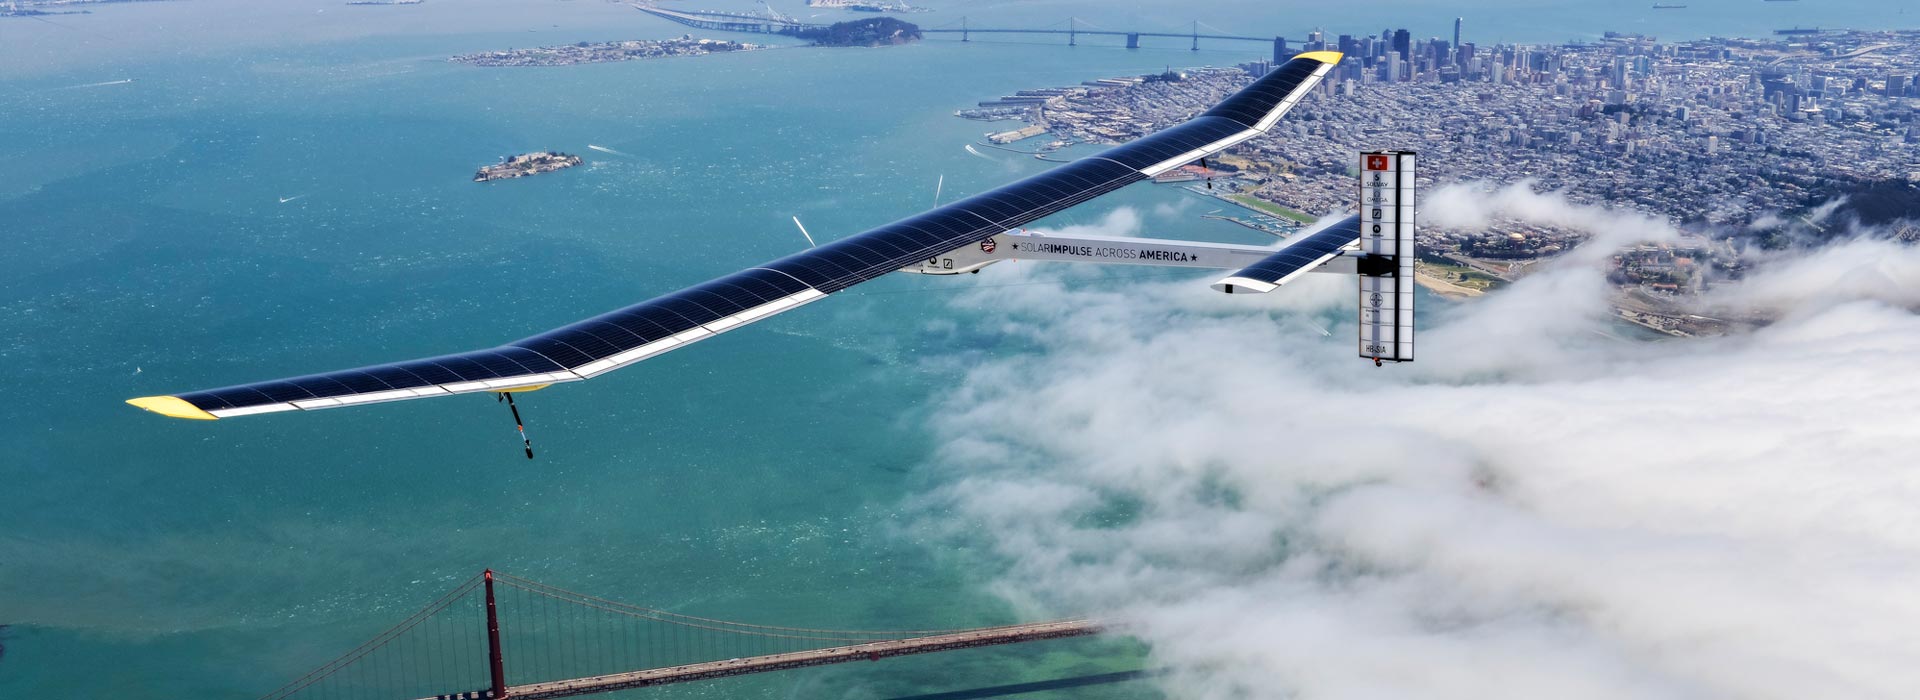 Solar-Impulse-Across-America-Golden-Gate-2013